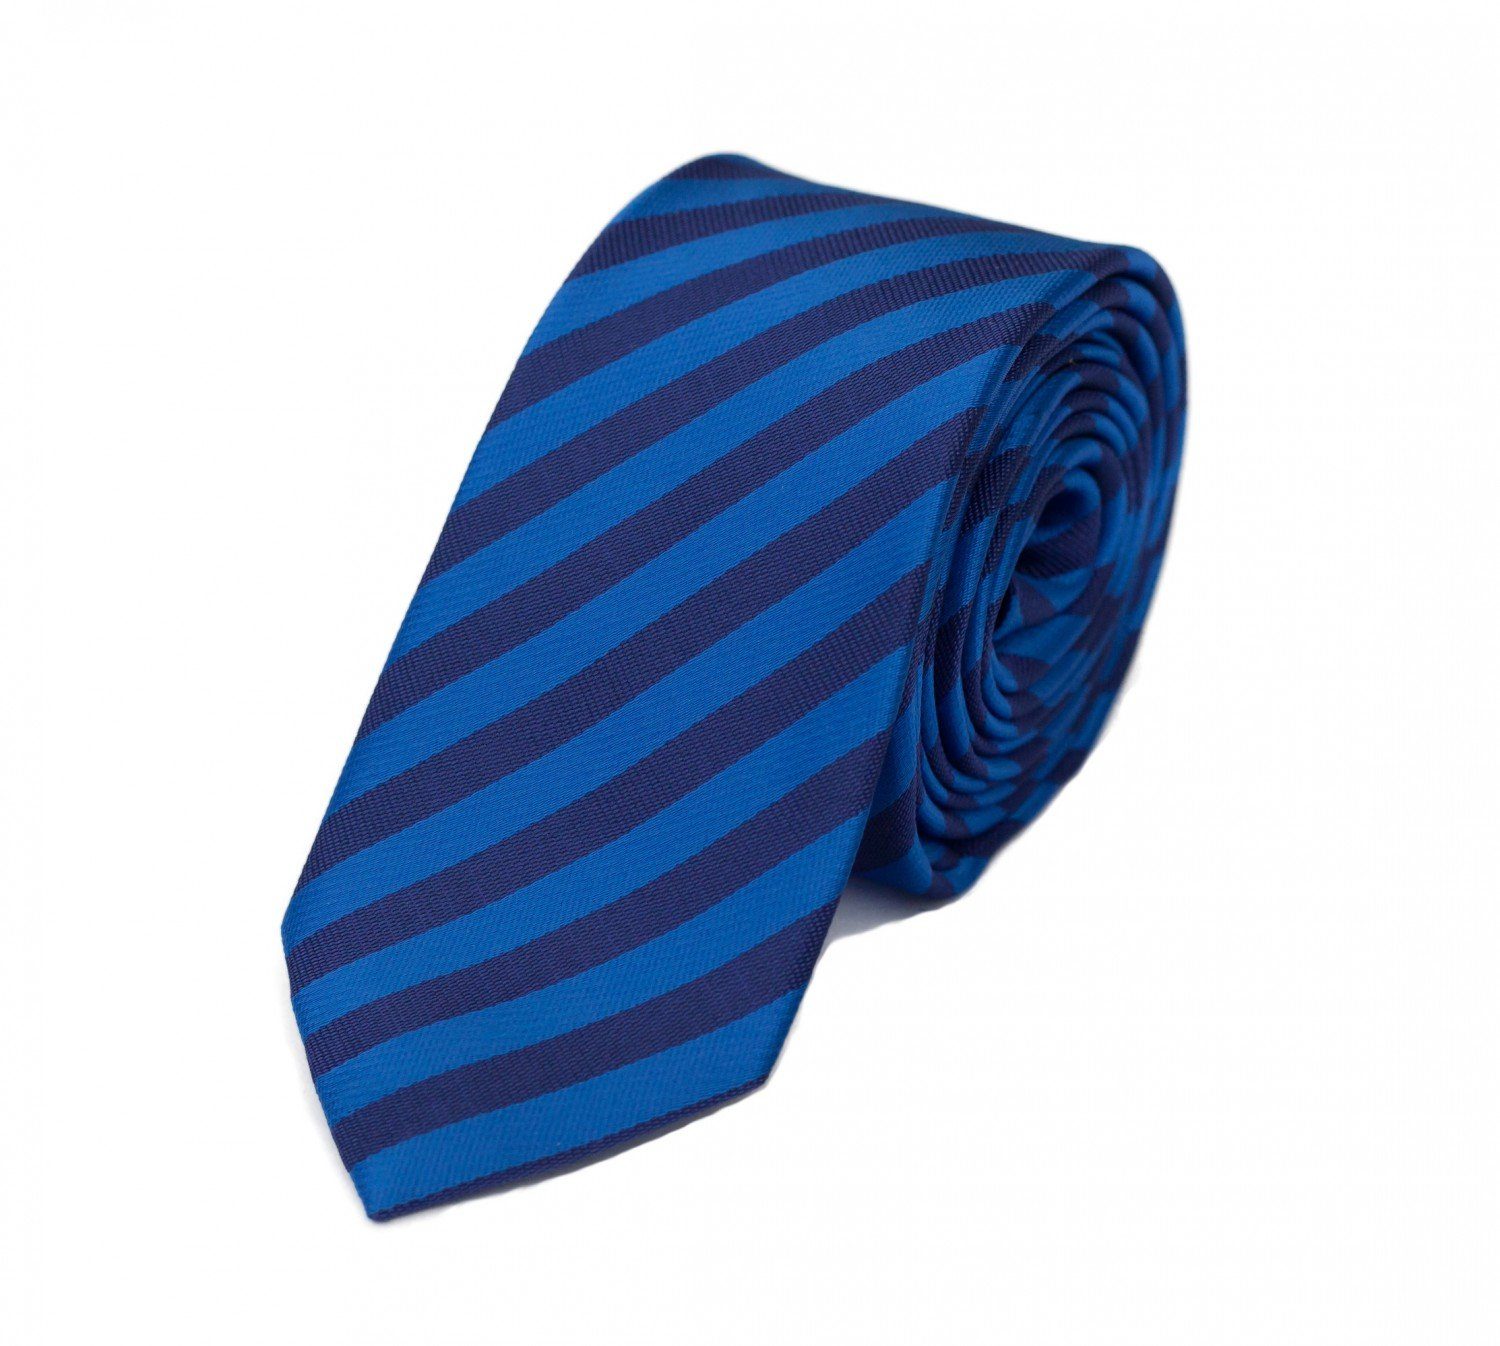 Fabio Farini Krawatte gestreifte Herren Krawatte - Tie mit Streifen in 6cm oder 8cm Breite (ohne Box, Gestreift) Breit (8cm), Stahlblau/Navyblau